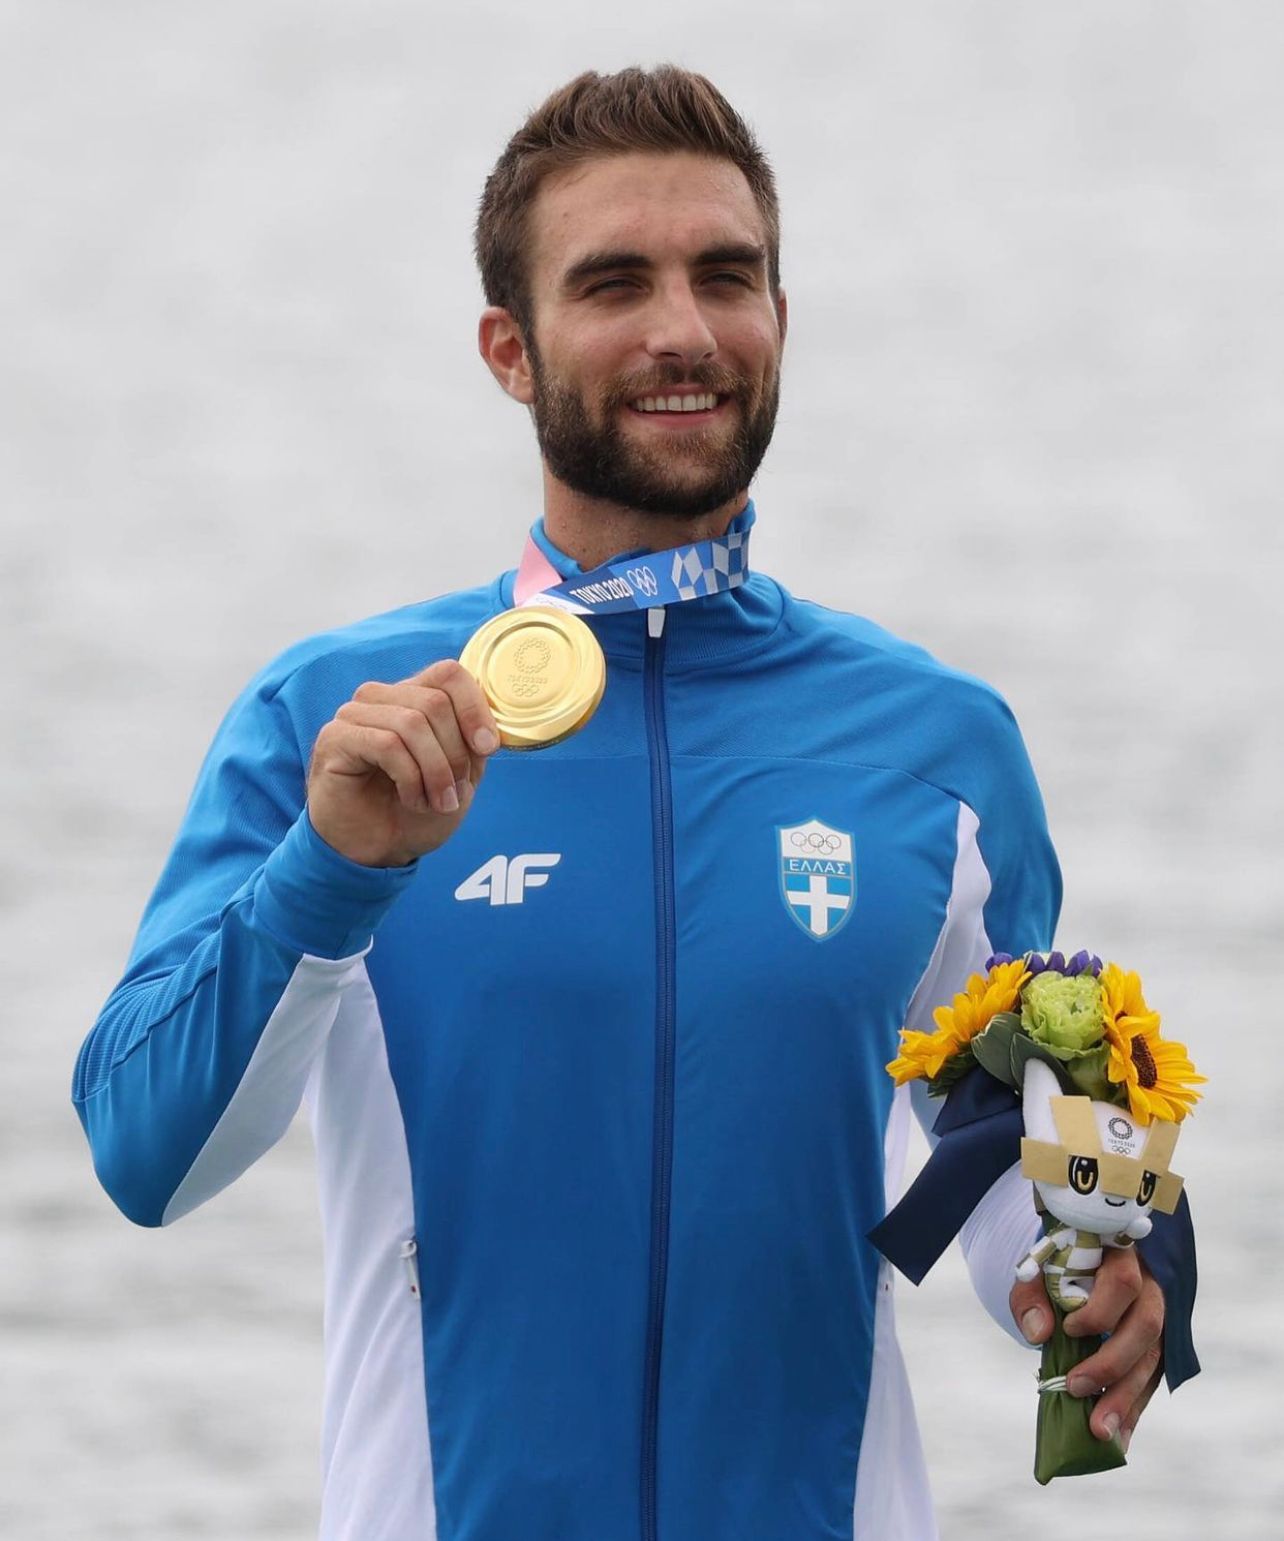 Ο Χρυσός Ολυμπιονίκης Στέφανος Ντούσκος με το Χρυσό Μετάλλιο από τους Ολυμπιακούς Αγώνες του Τόκυο